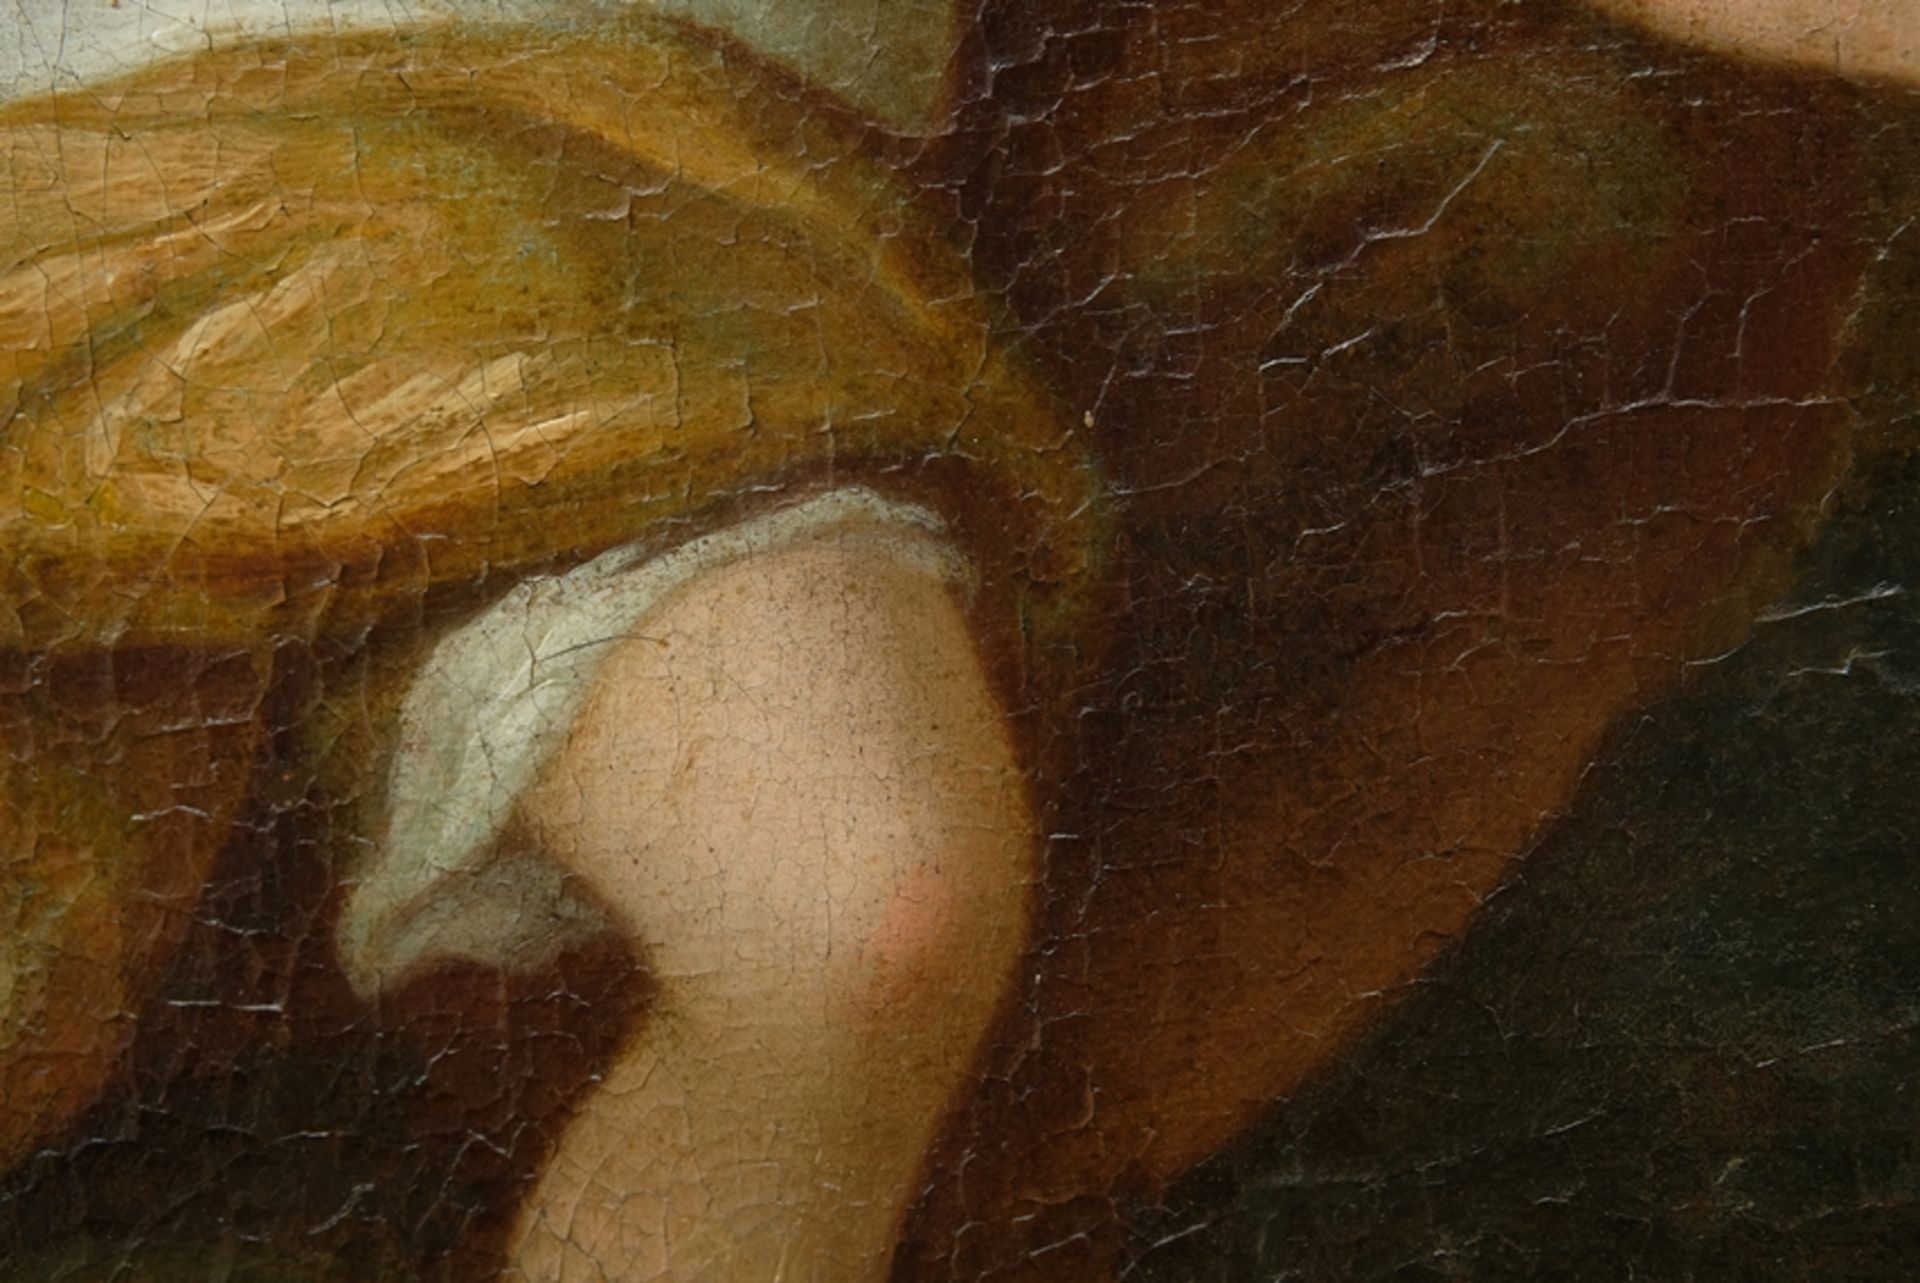 Unbekannt (frühes 18. Jahrhundert) Venus und Adonis, Öl auf Leinwand. - Bild 10 aus 16